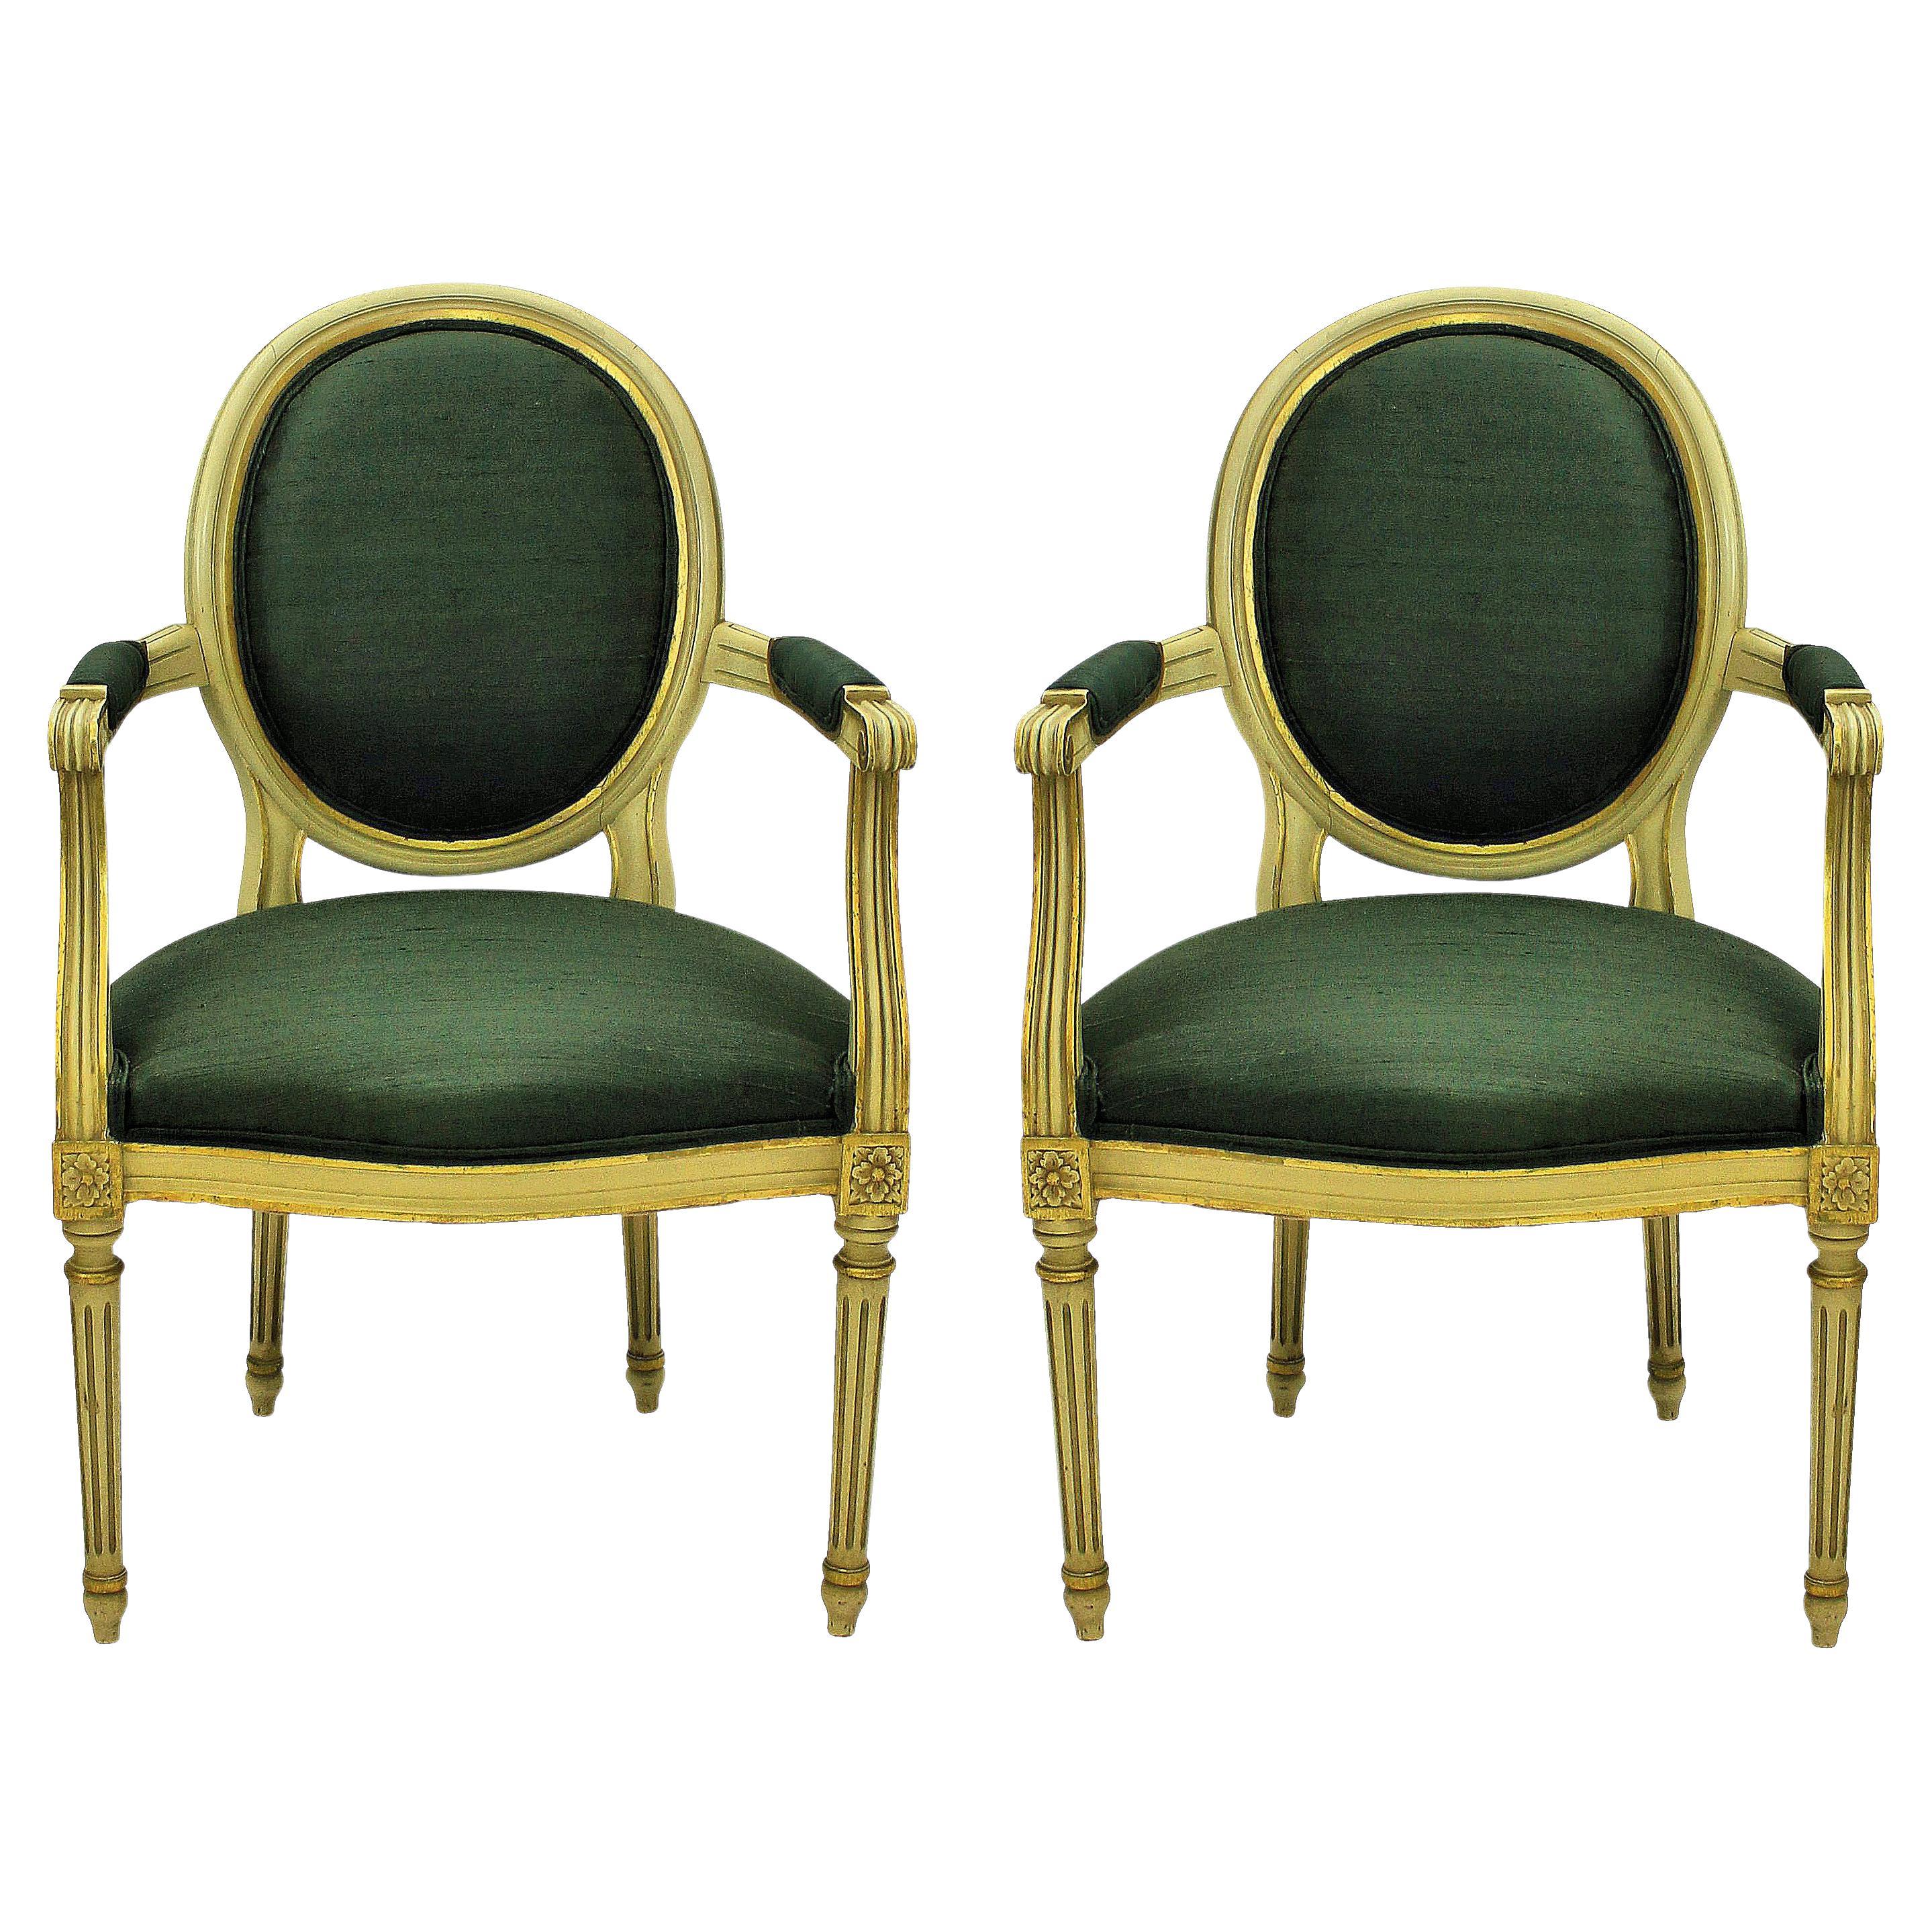 Paire de fauteuils peints et dorés de style Louis XV en soie vert sauge